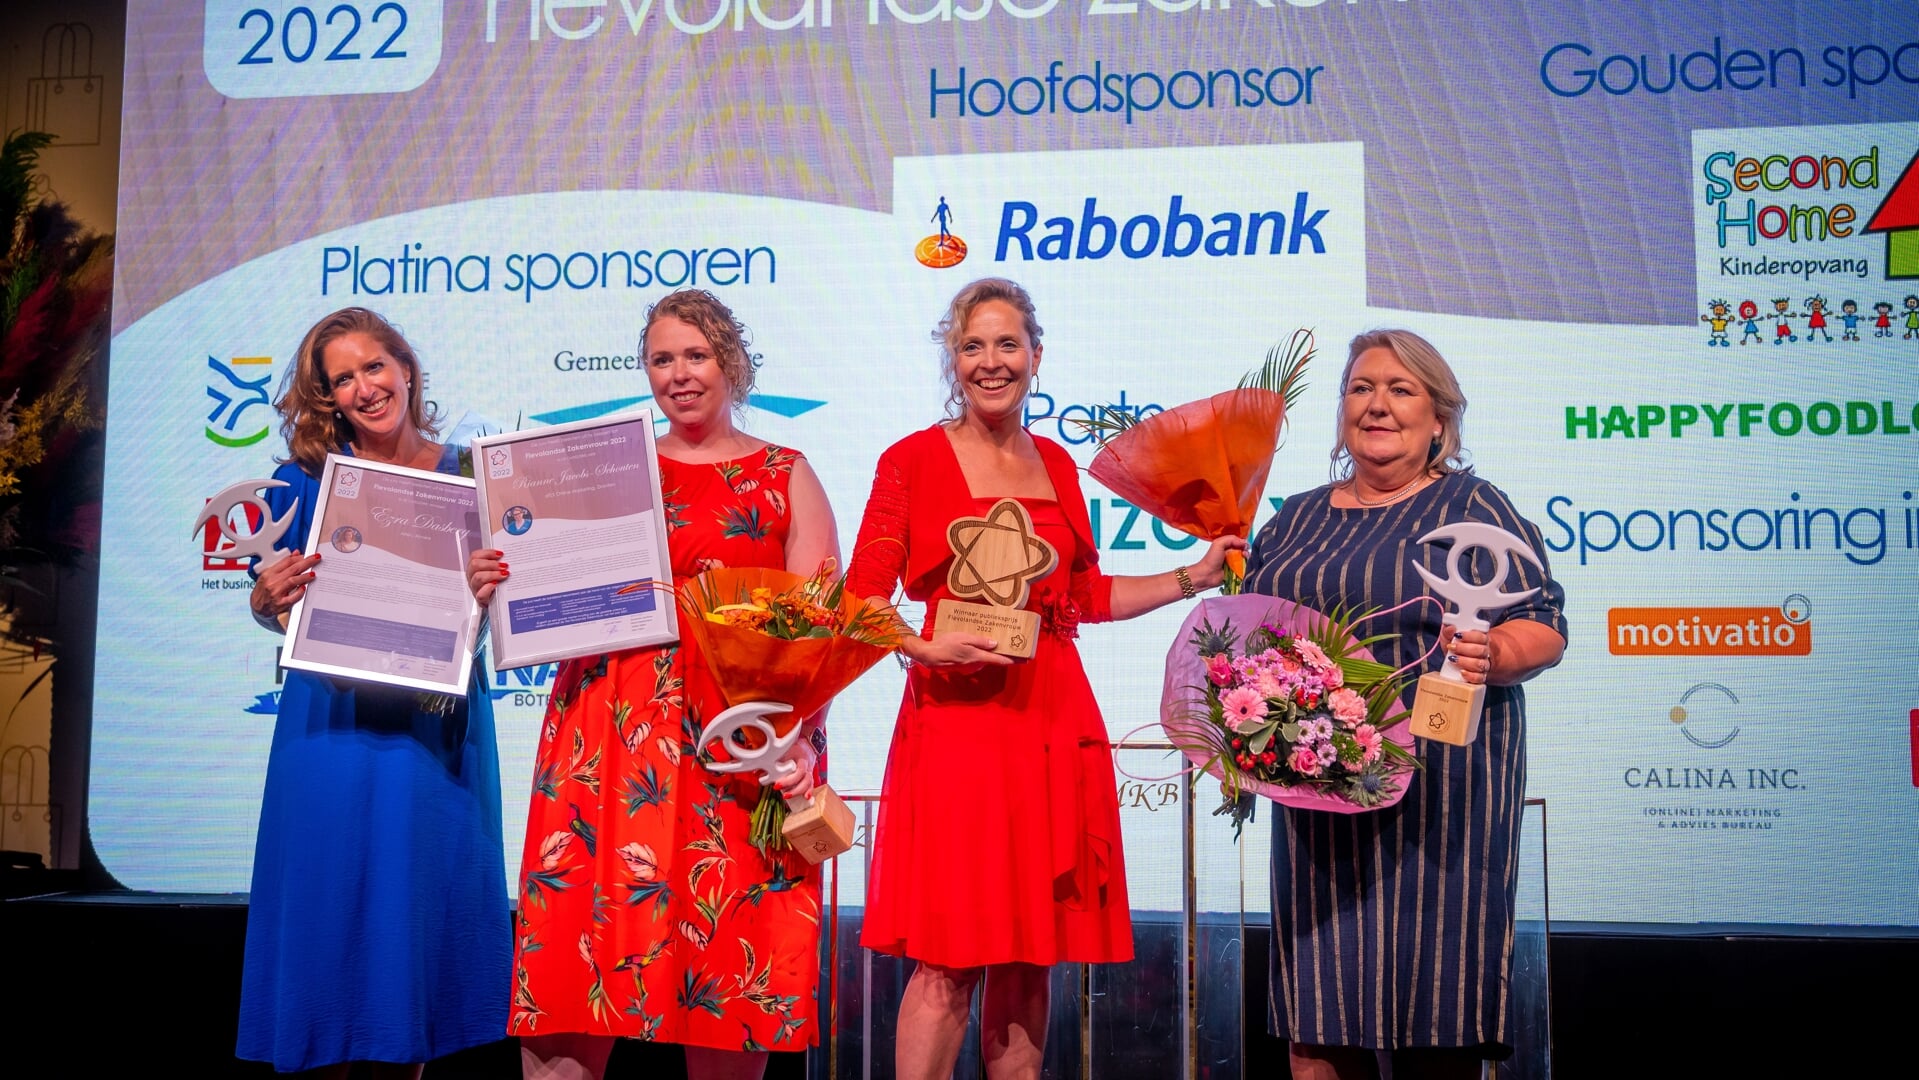 De winnaressen van afgelopen jaar. Van links naar rechts: Ezra Dasberg, Rianne Jacobs – Schouten, Jolanda Jansen en Annette Stevens. (Foto: Calina inc.)